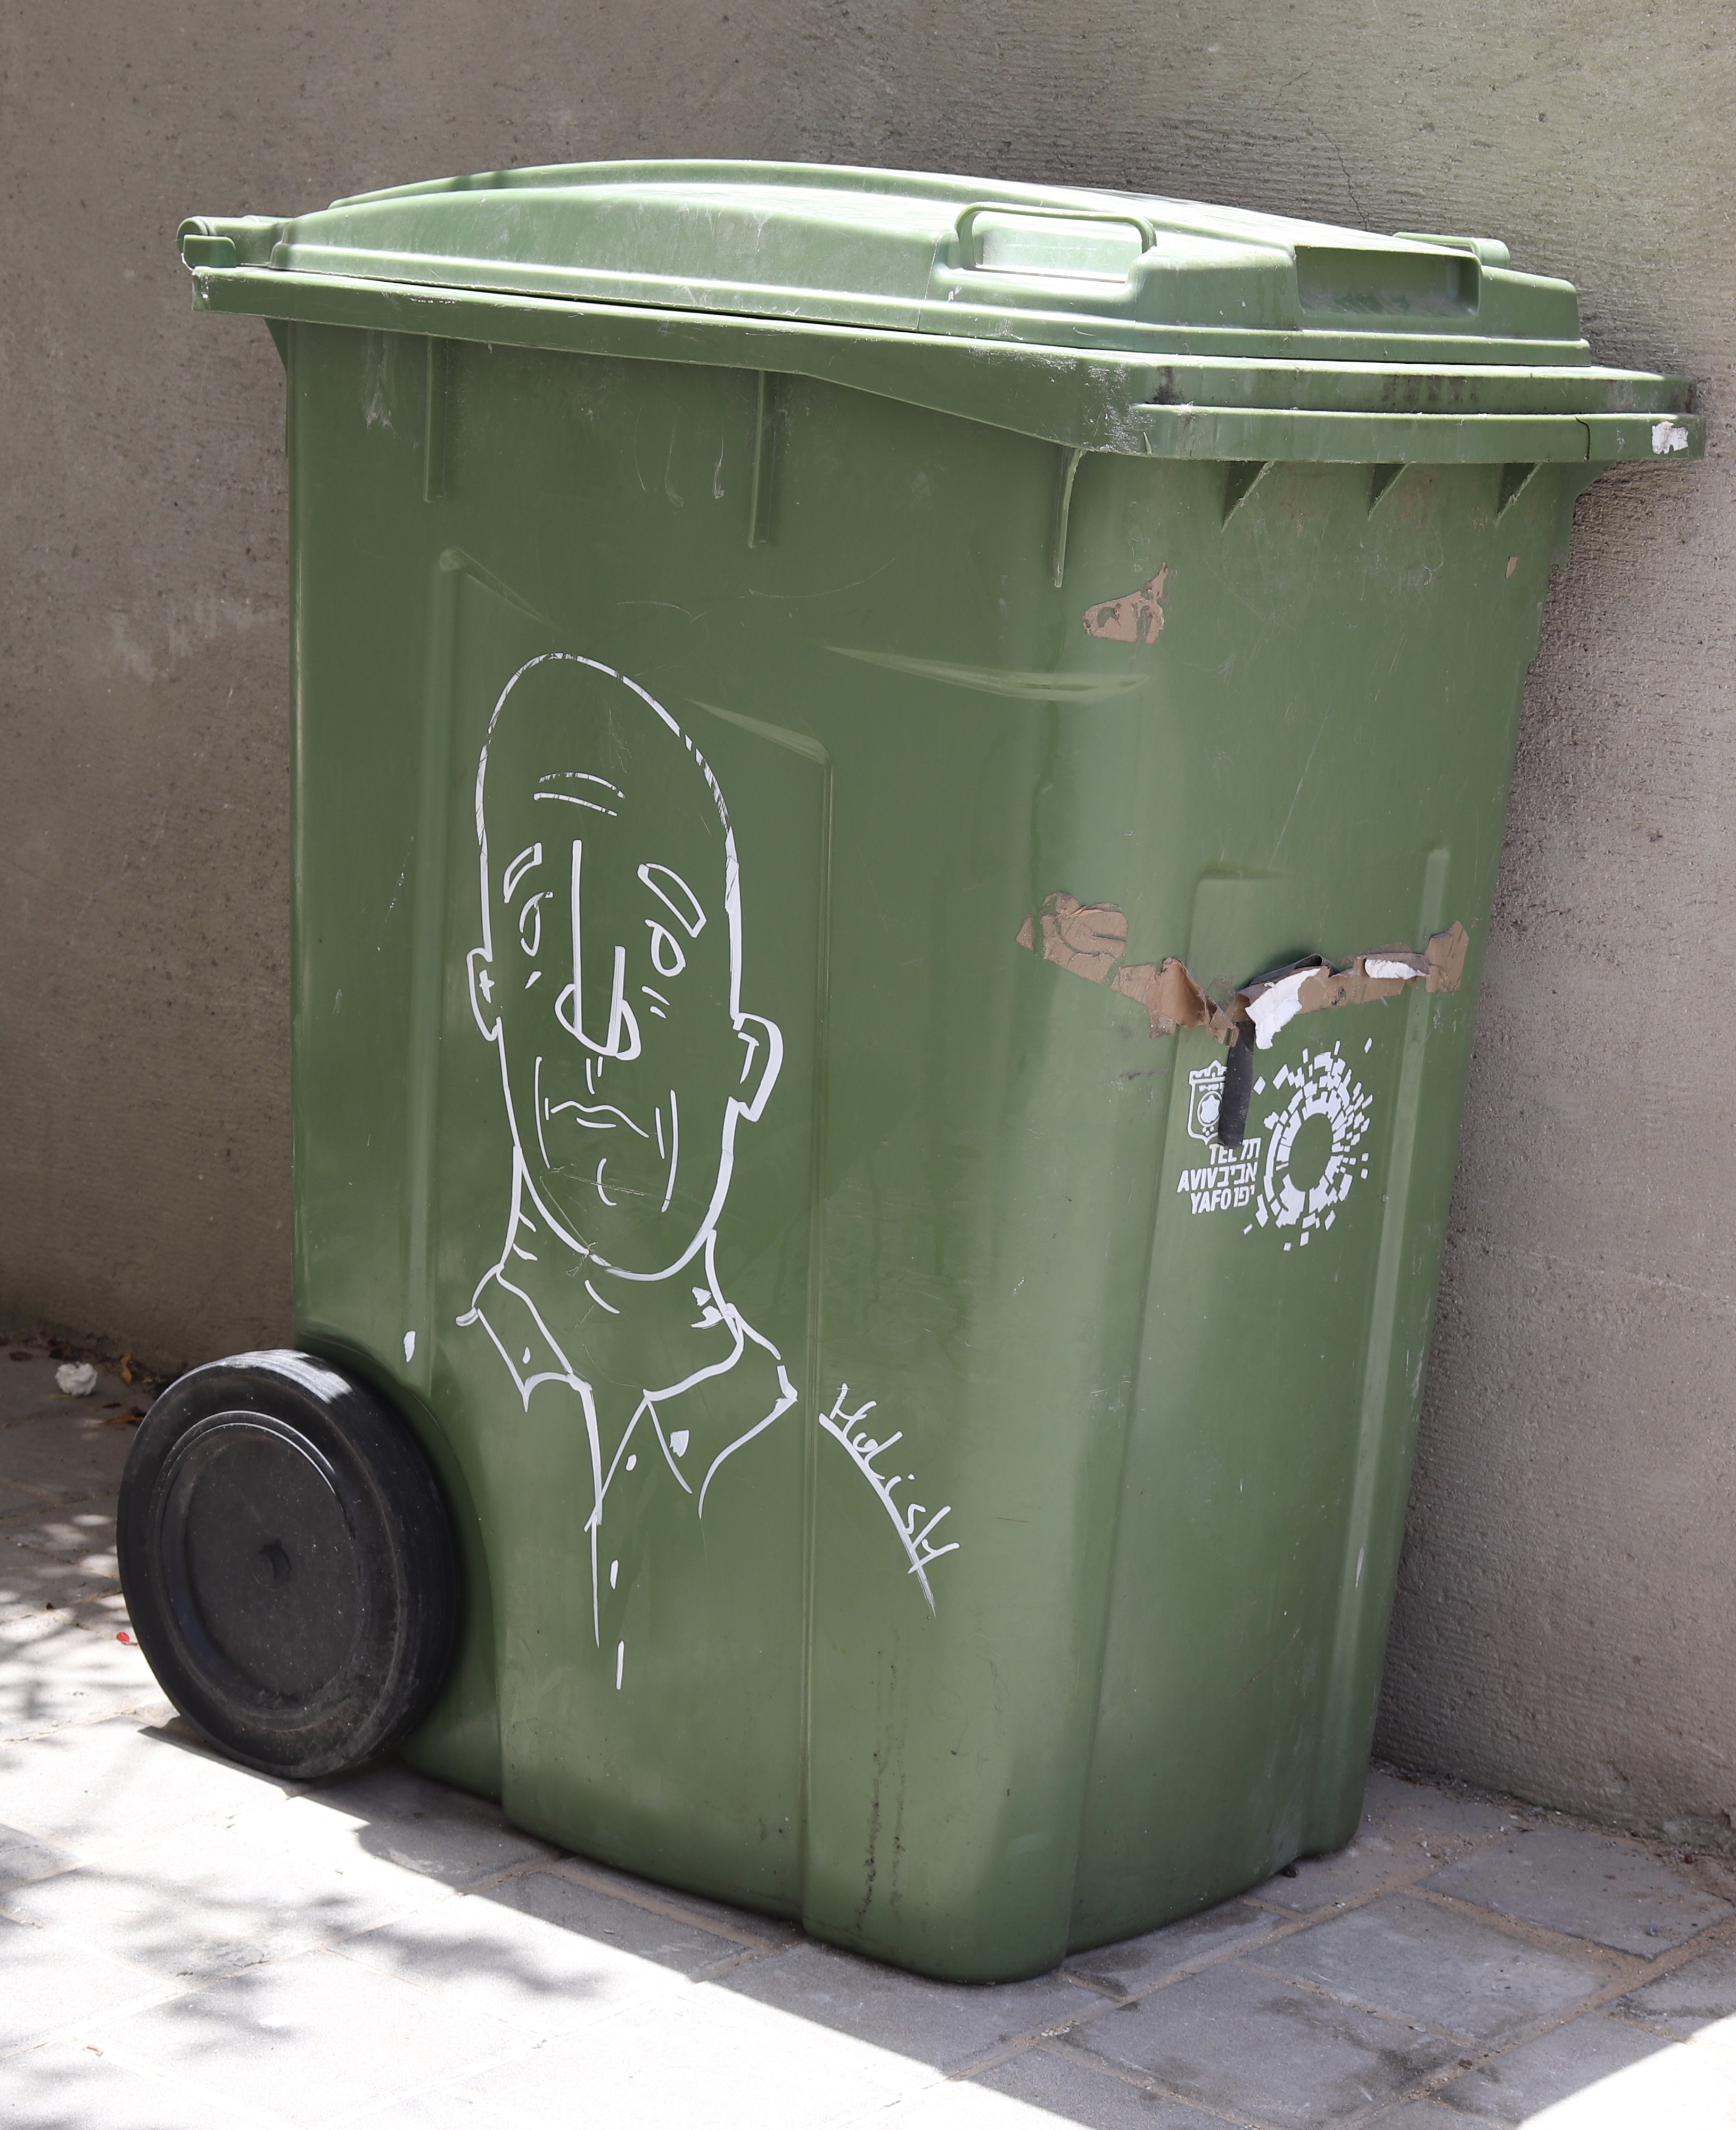 graffiti on a wheelie bin in Tel Aviv